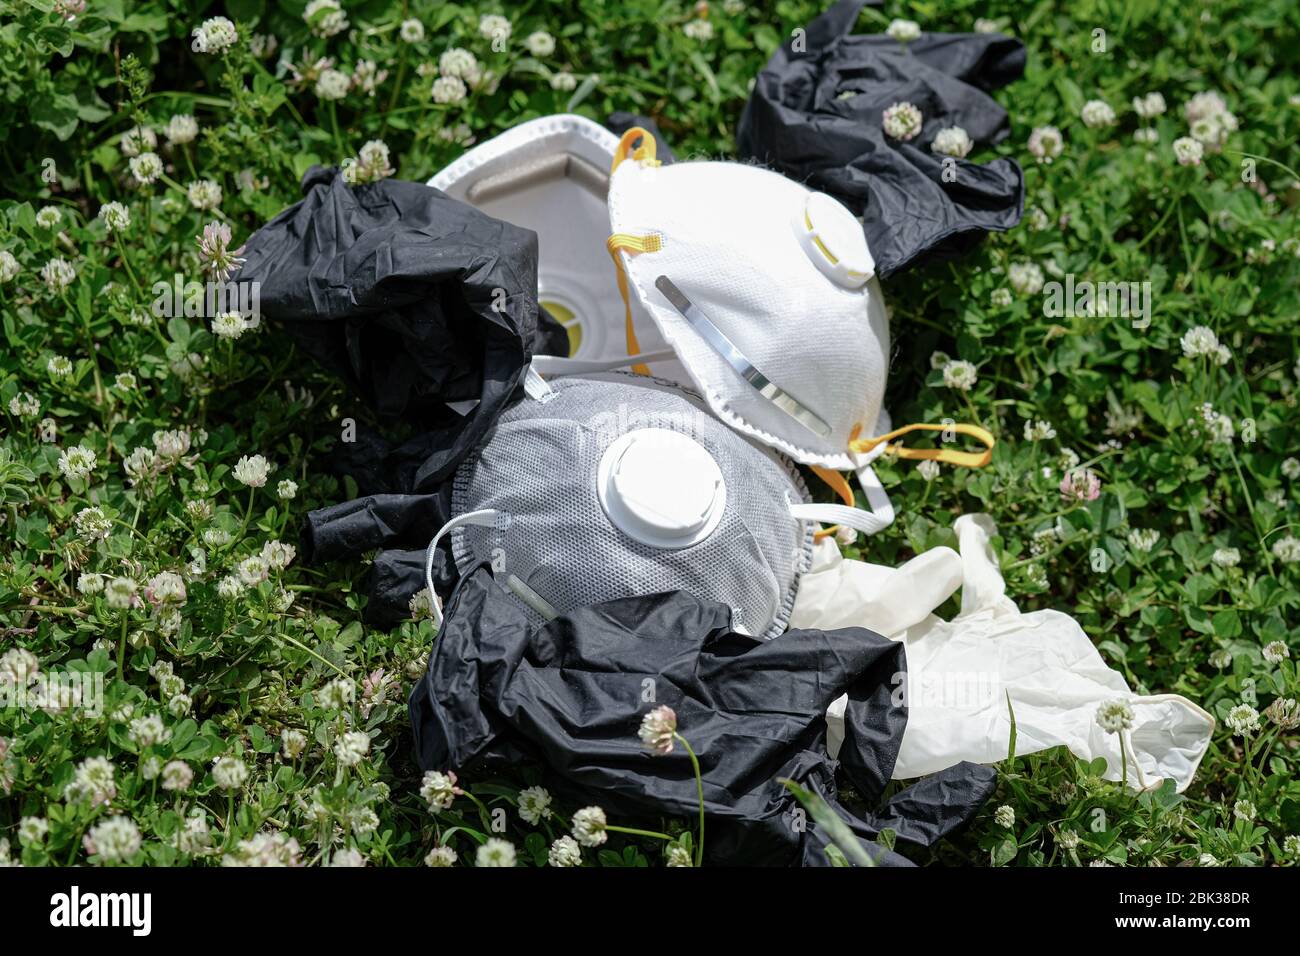 Maschera medica ffp2 e guanti protettivi rifiuti rifiuti rifiuti rifiuti su erba terreno.covid coronavirus malattia inquinamento da rifiuti Foto Stock